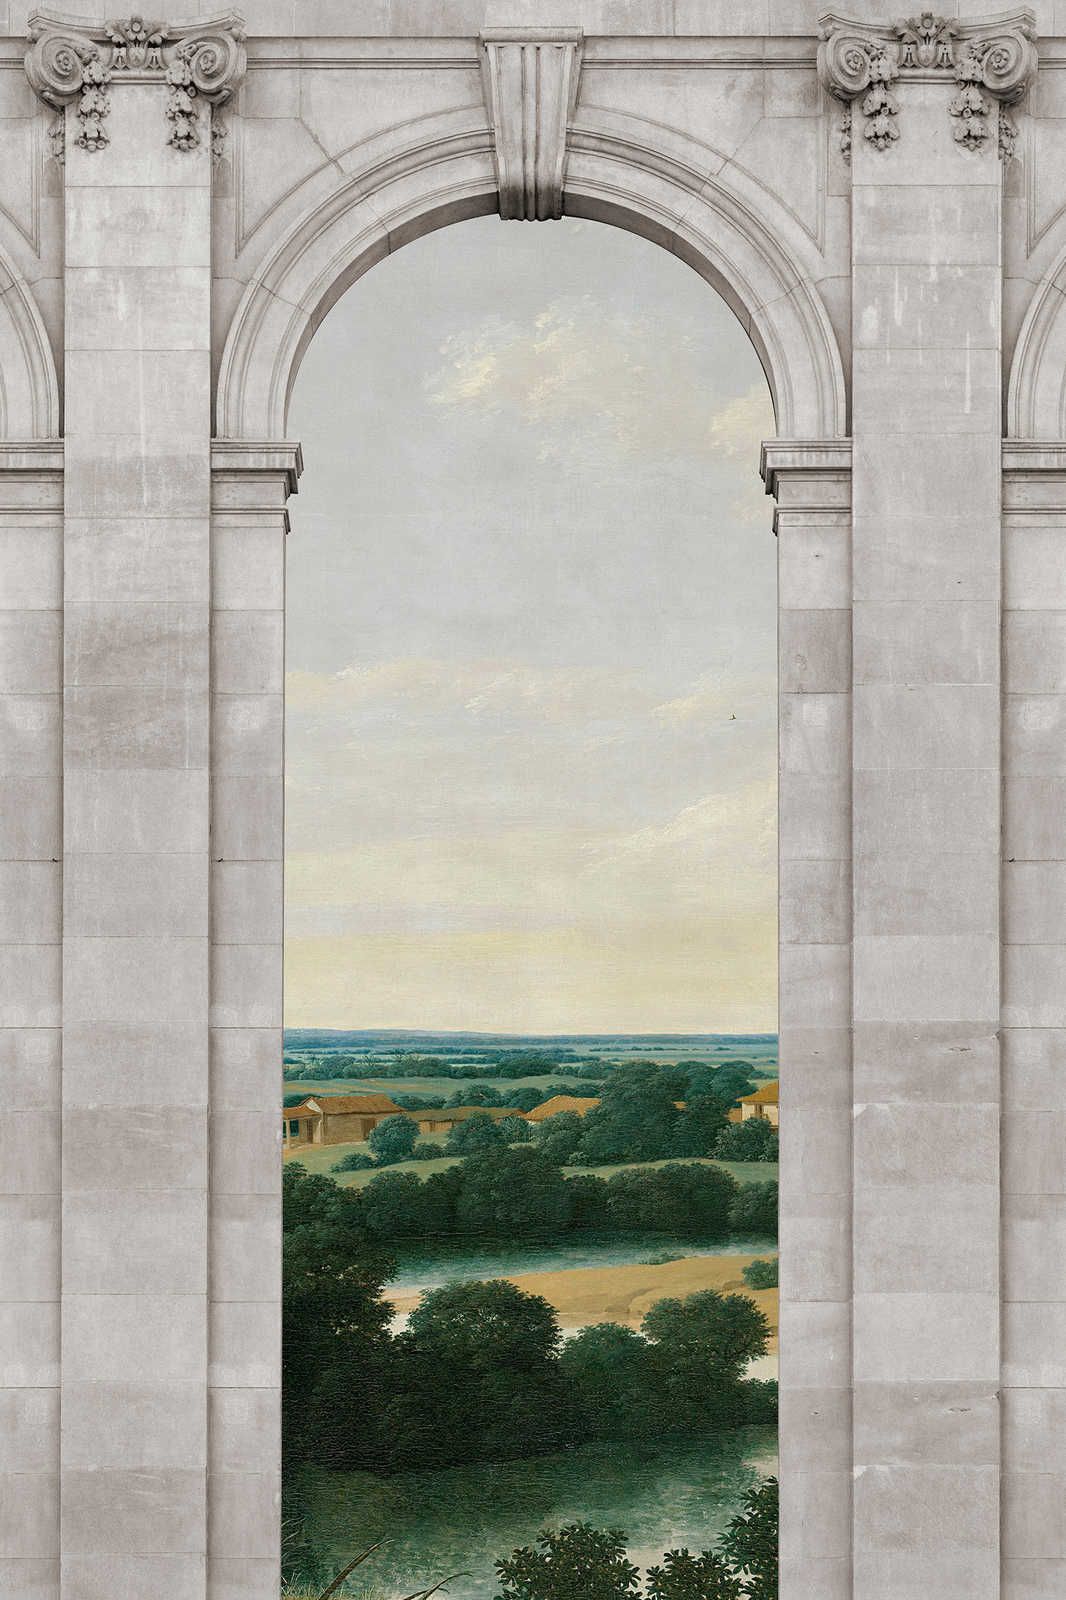             Castello 2 - Quadro su tela per finestre Arco e vista paesaggio - 0,90 m x 0,60 m
        